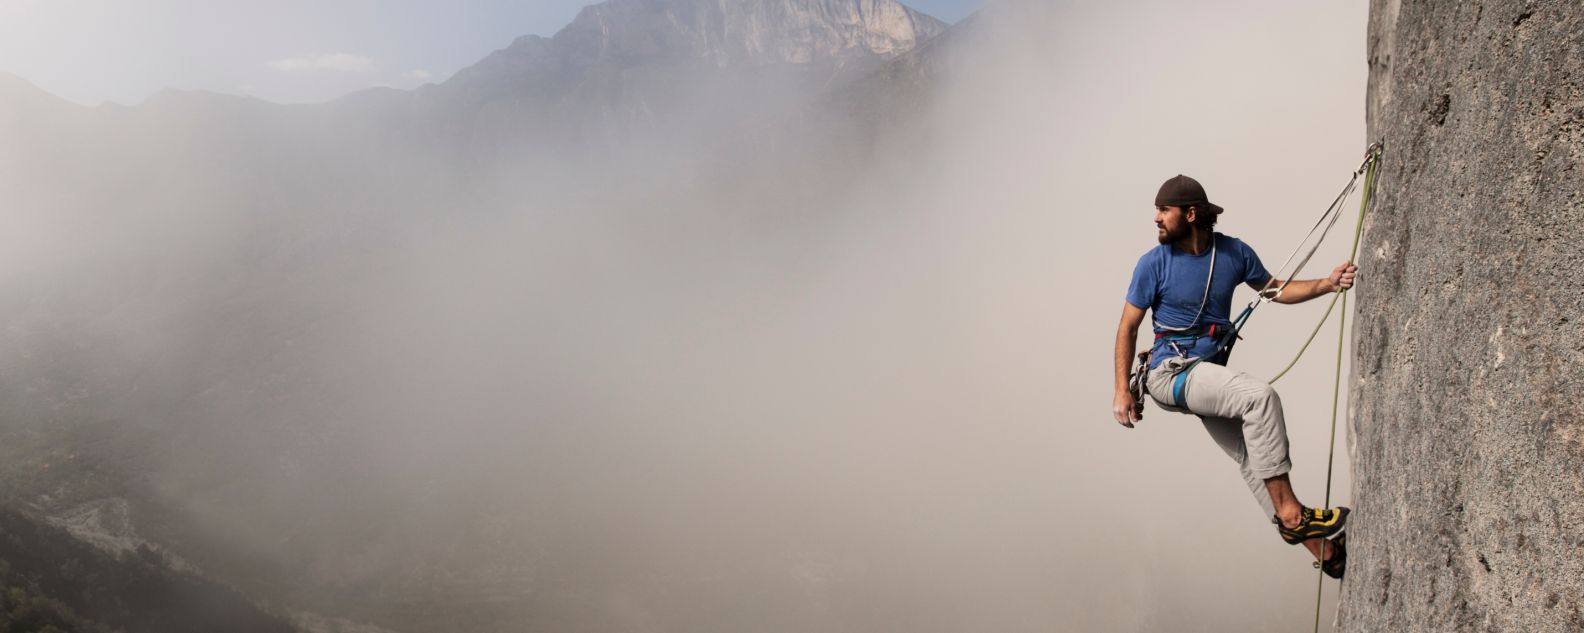 Alpinista asciende por una pared rocosa entre las nubes